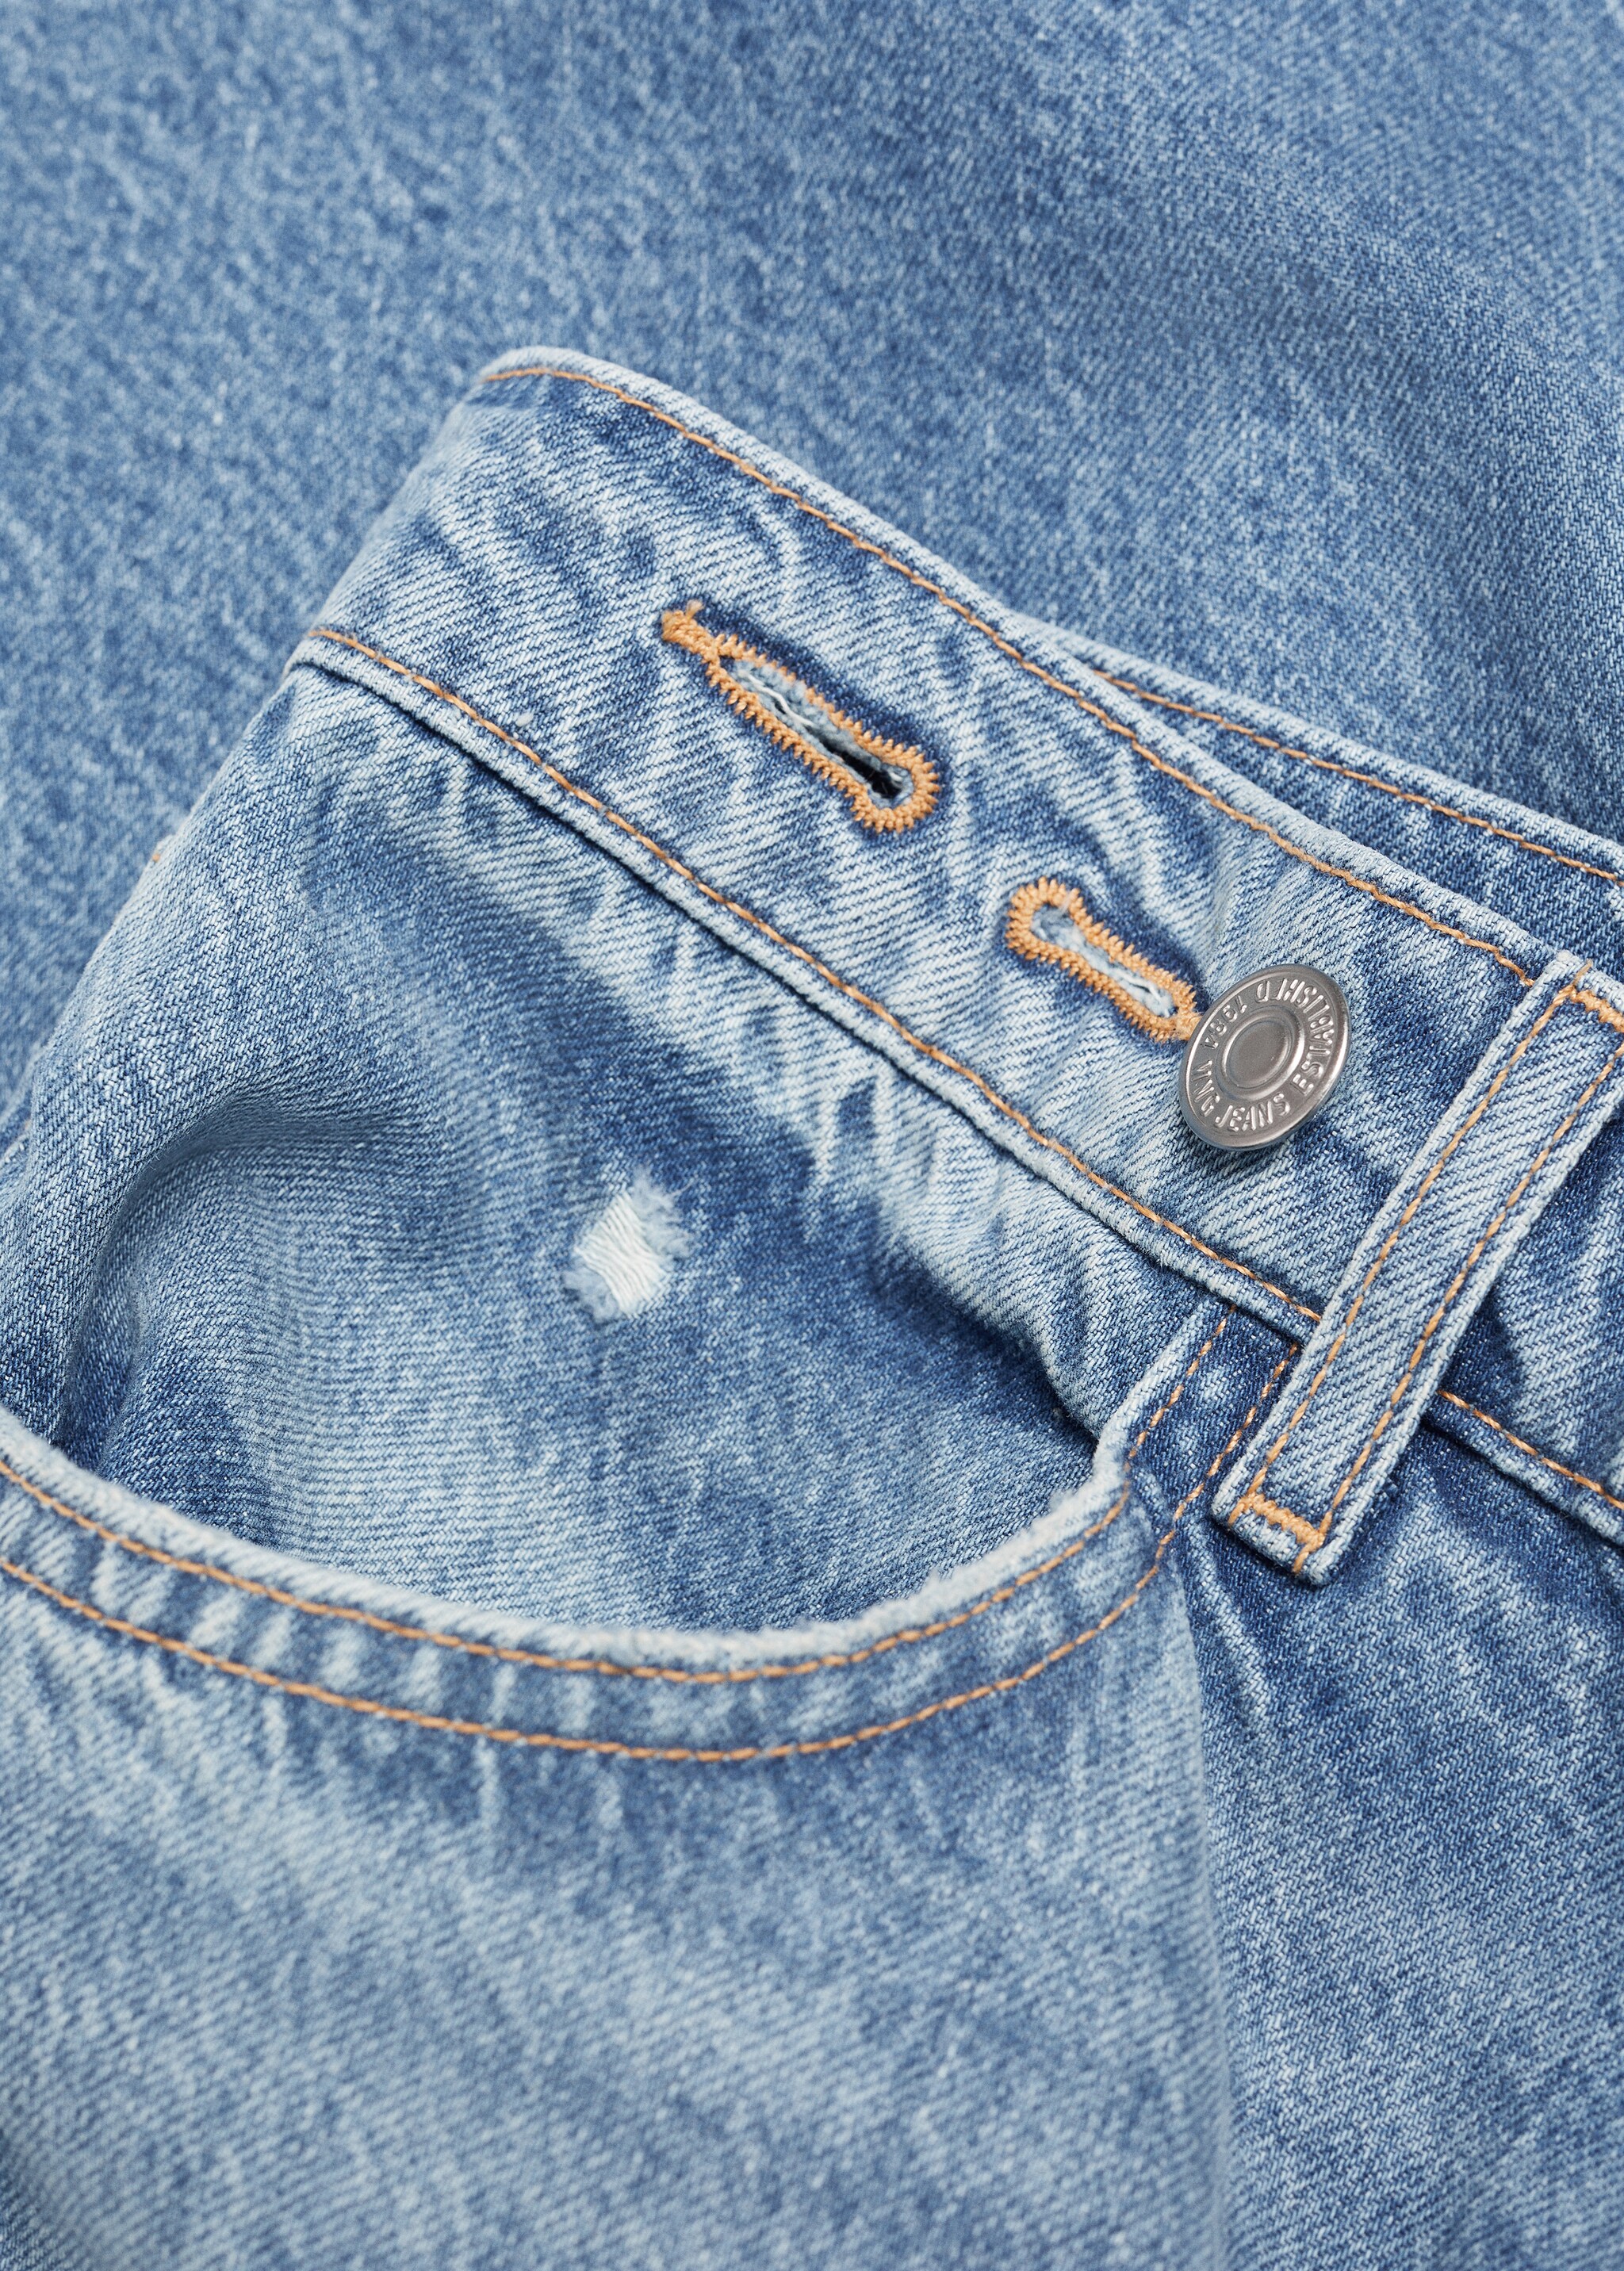 Jeans wideleg loose tiro medio - Detalle del artículo 8